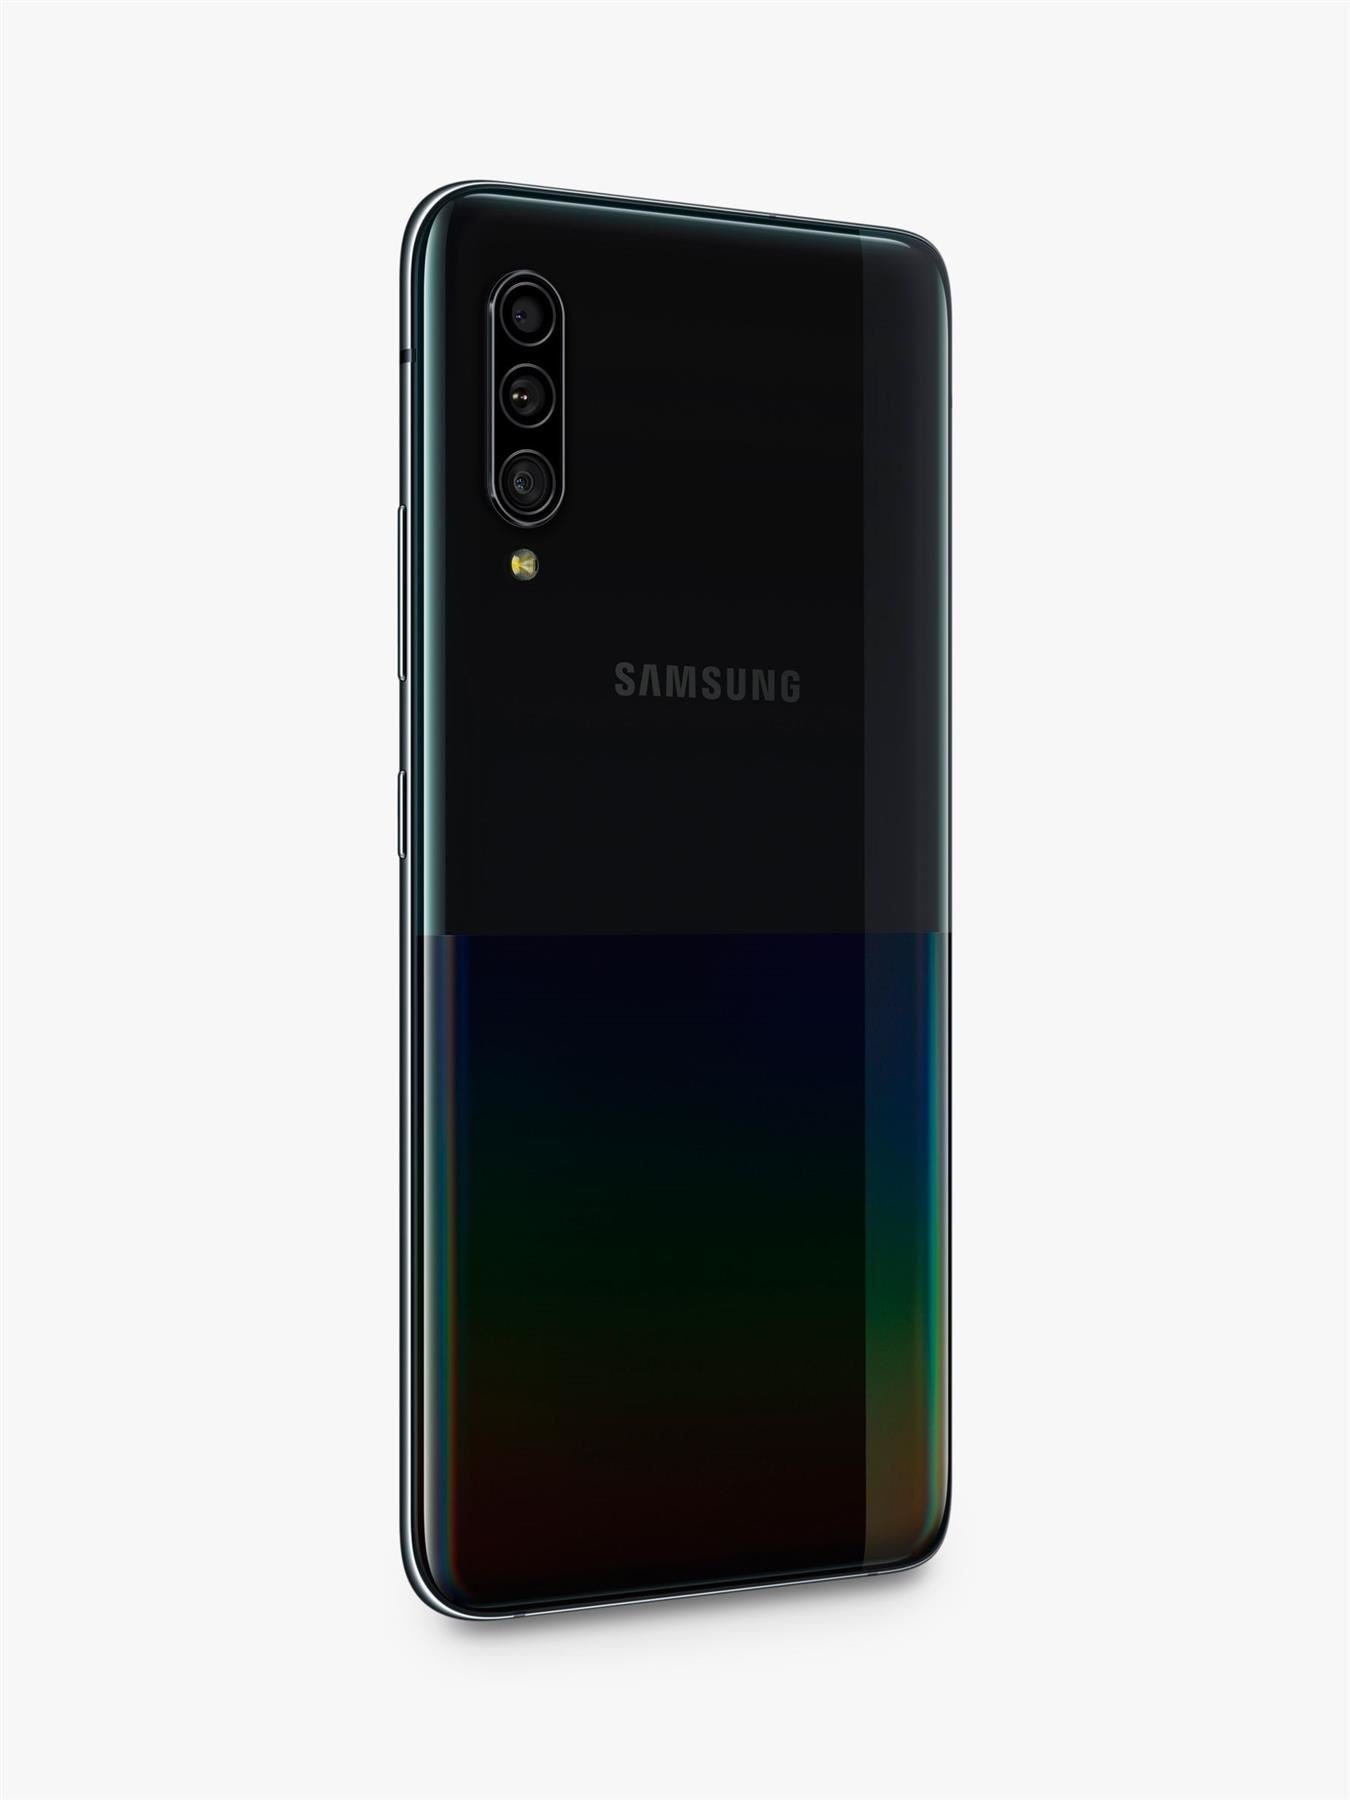 Samsung Galaxy A90 2019 5G Smartphone Unlocked 128GB